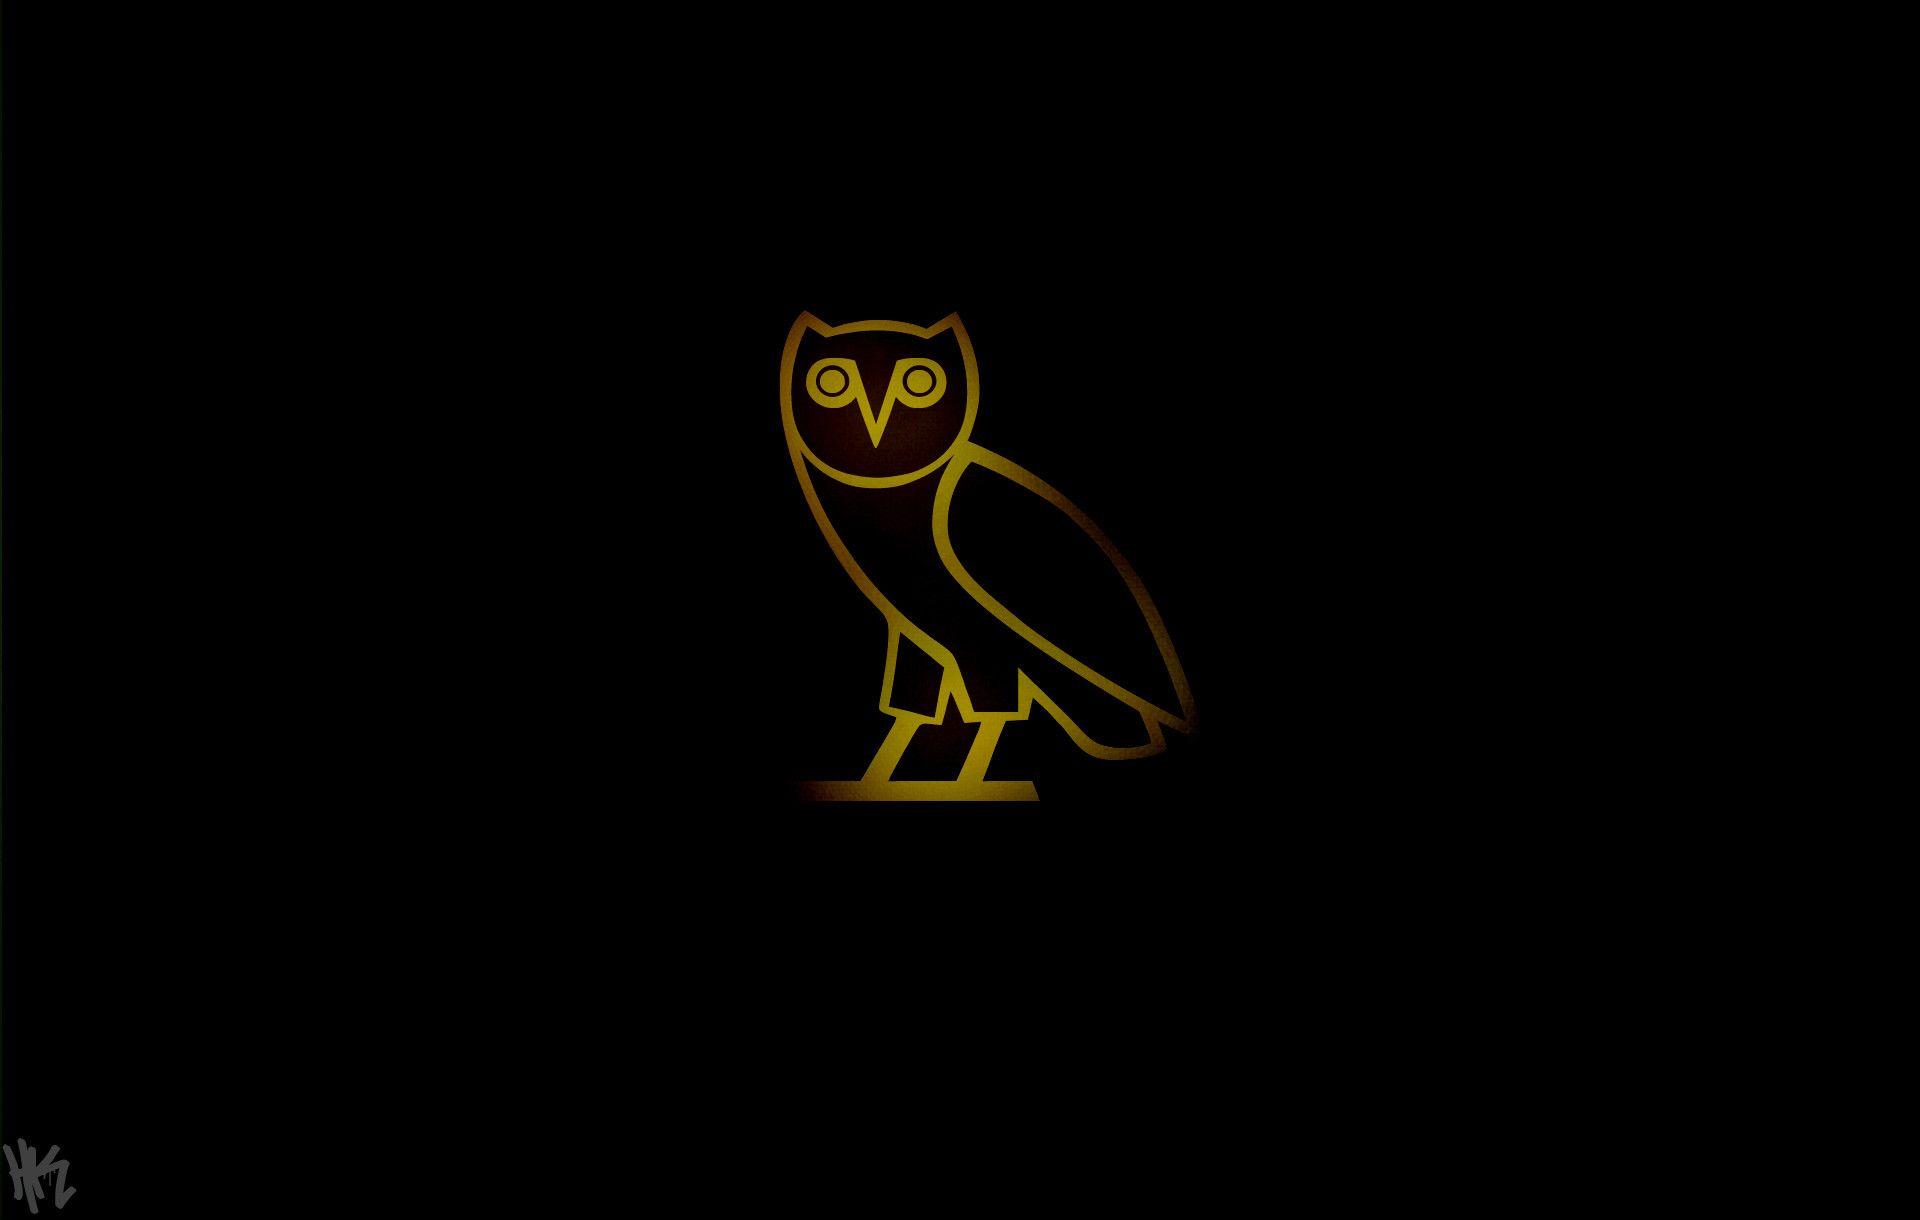 Drake Ovoxo Logo - Best Free Drake OVO Logo Wallpaper